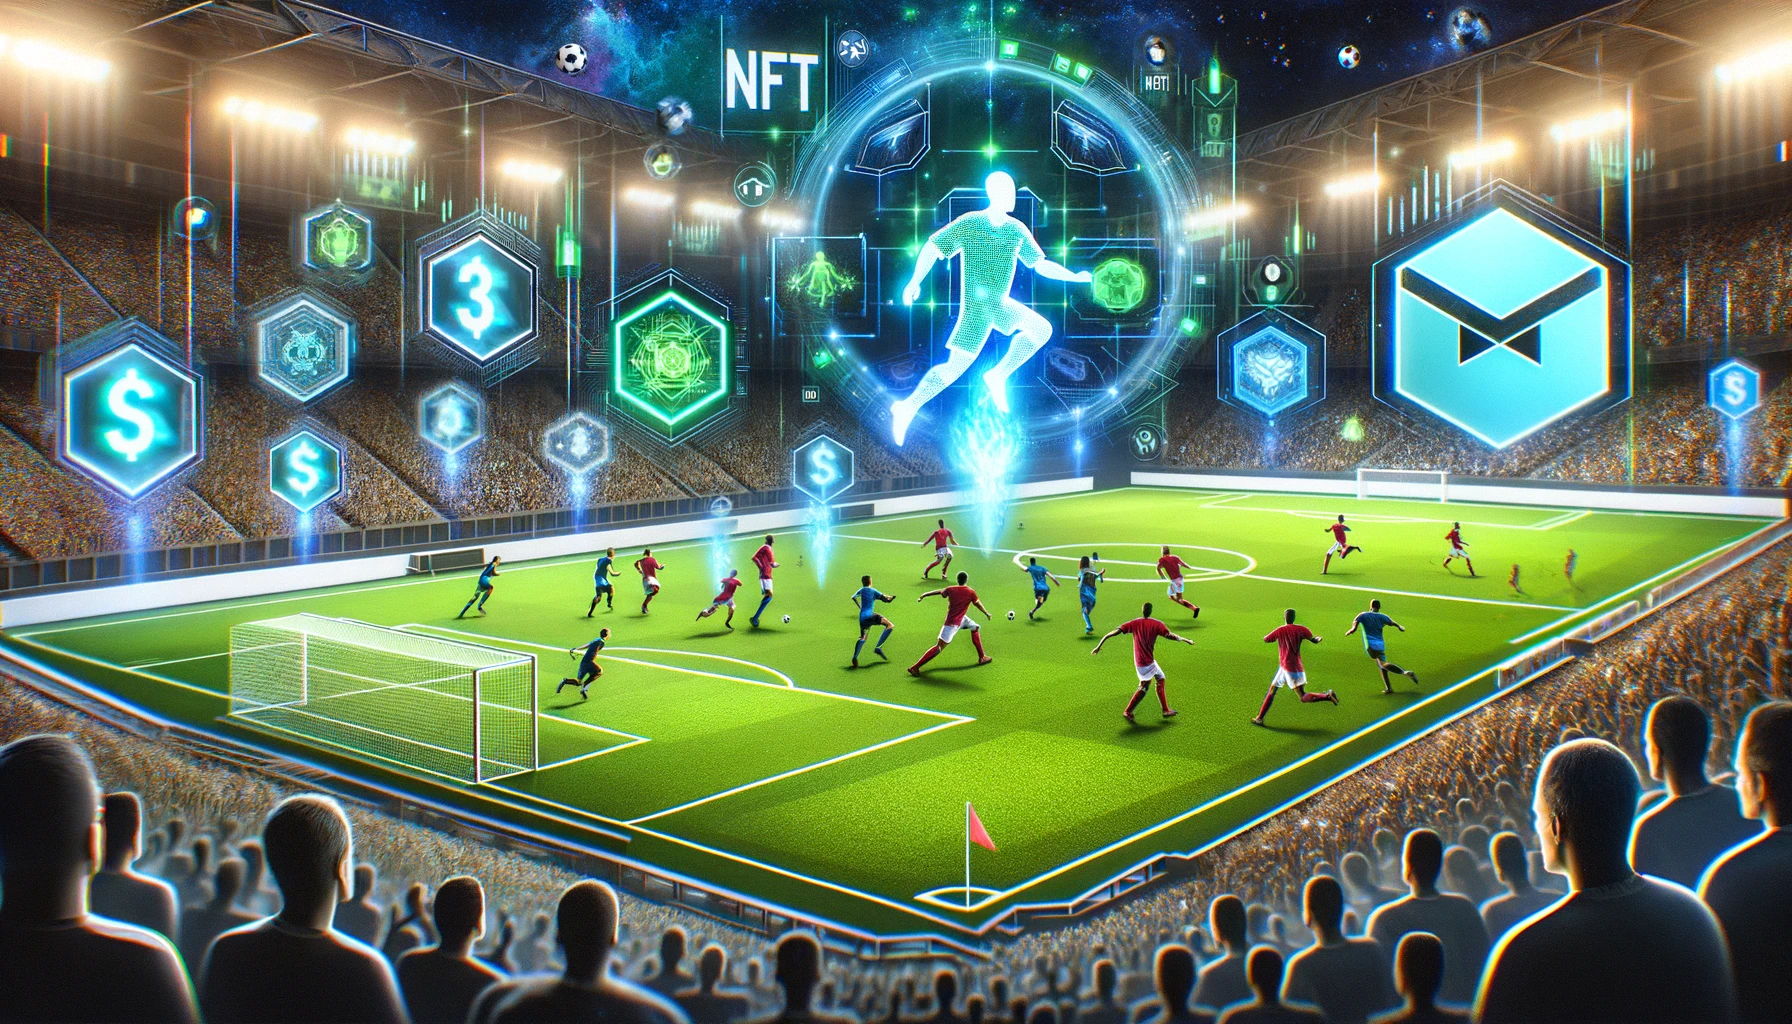 Captain Tsubasa startet NFT-Fußballspiel auf der Oasys-Blockchain